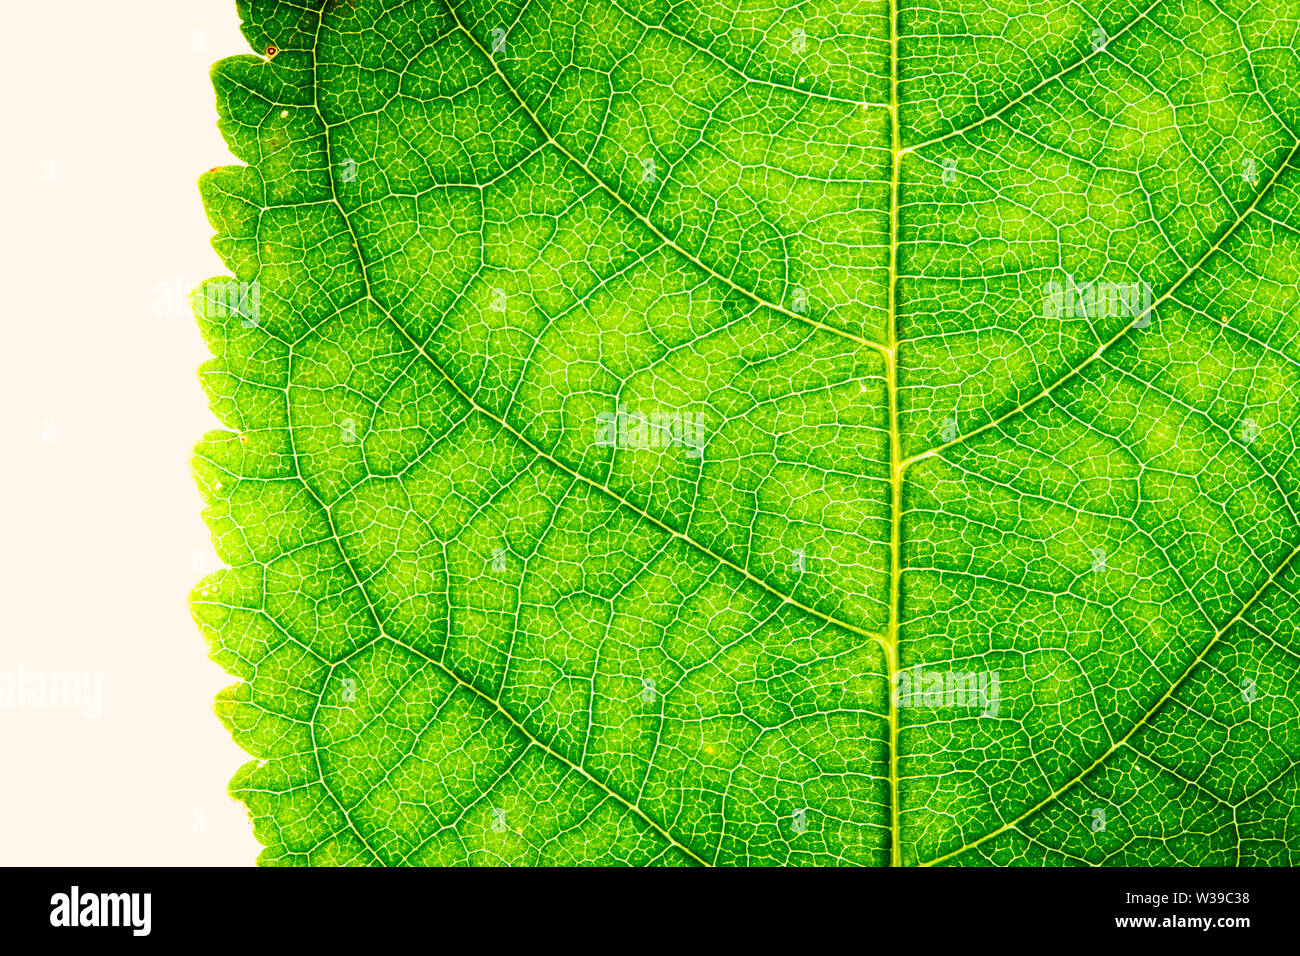 Vert feuille détaillée de la structure de surface robuste frais macro extrême photo gros plan avec la nervure principale, des nervures et des grooves comme une texture nature eco green biolo Banque D'Images